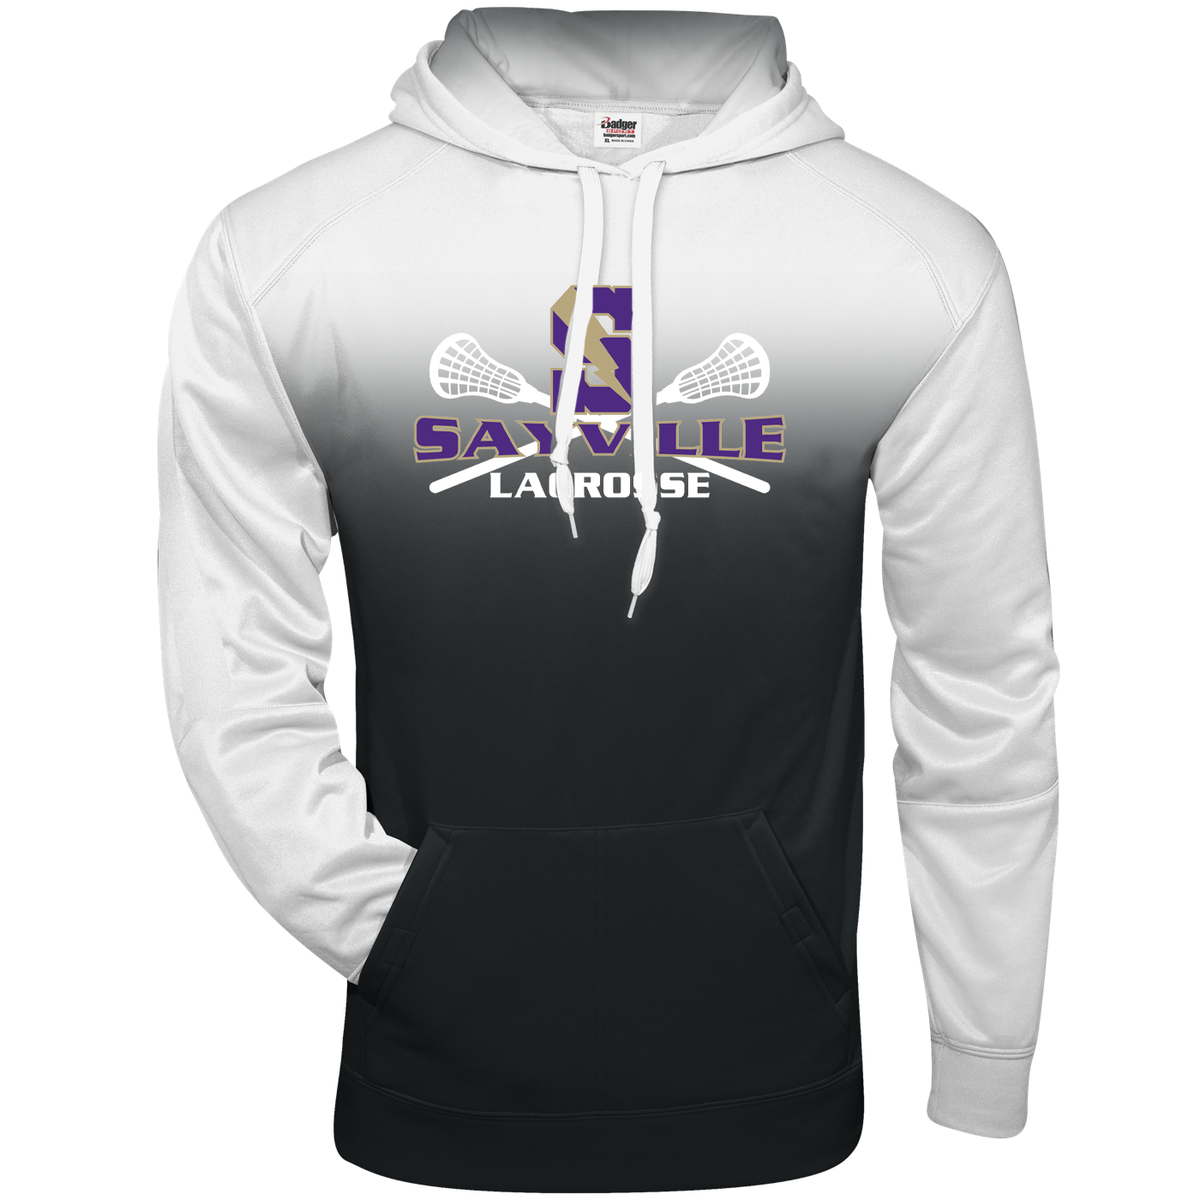 Sayville Lacrosse Ombre Hooded Sweatshirt